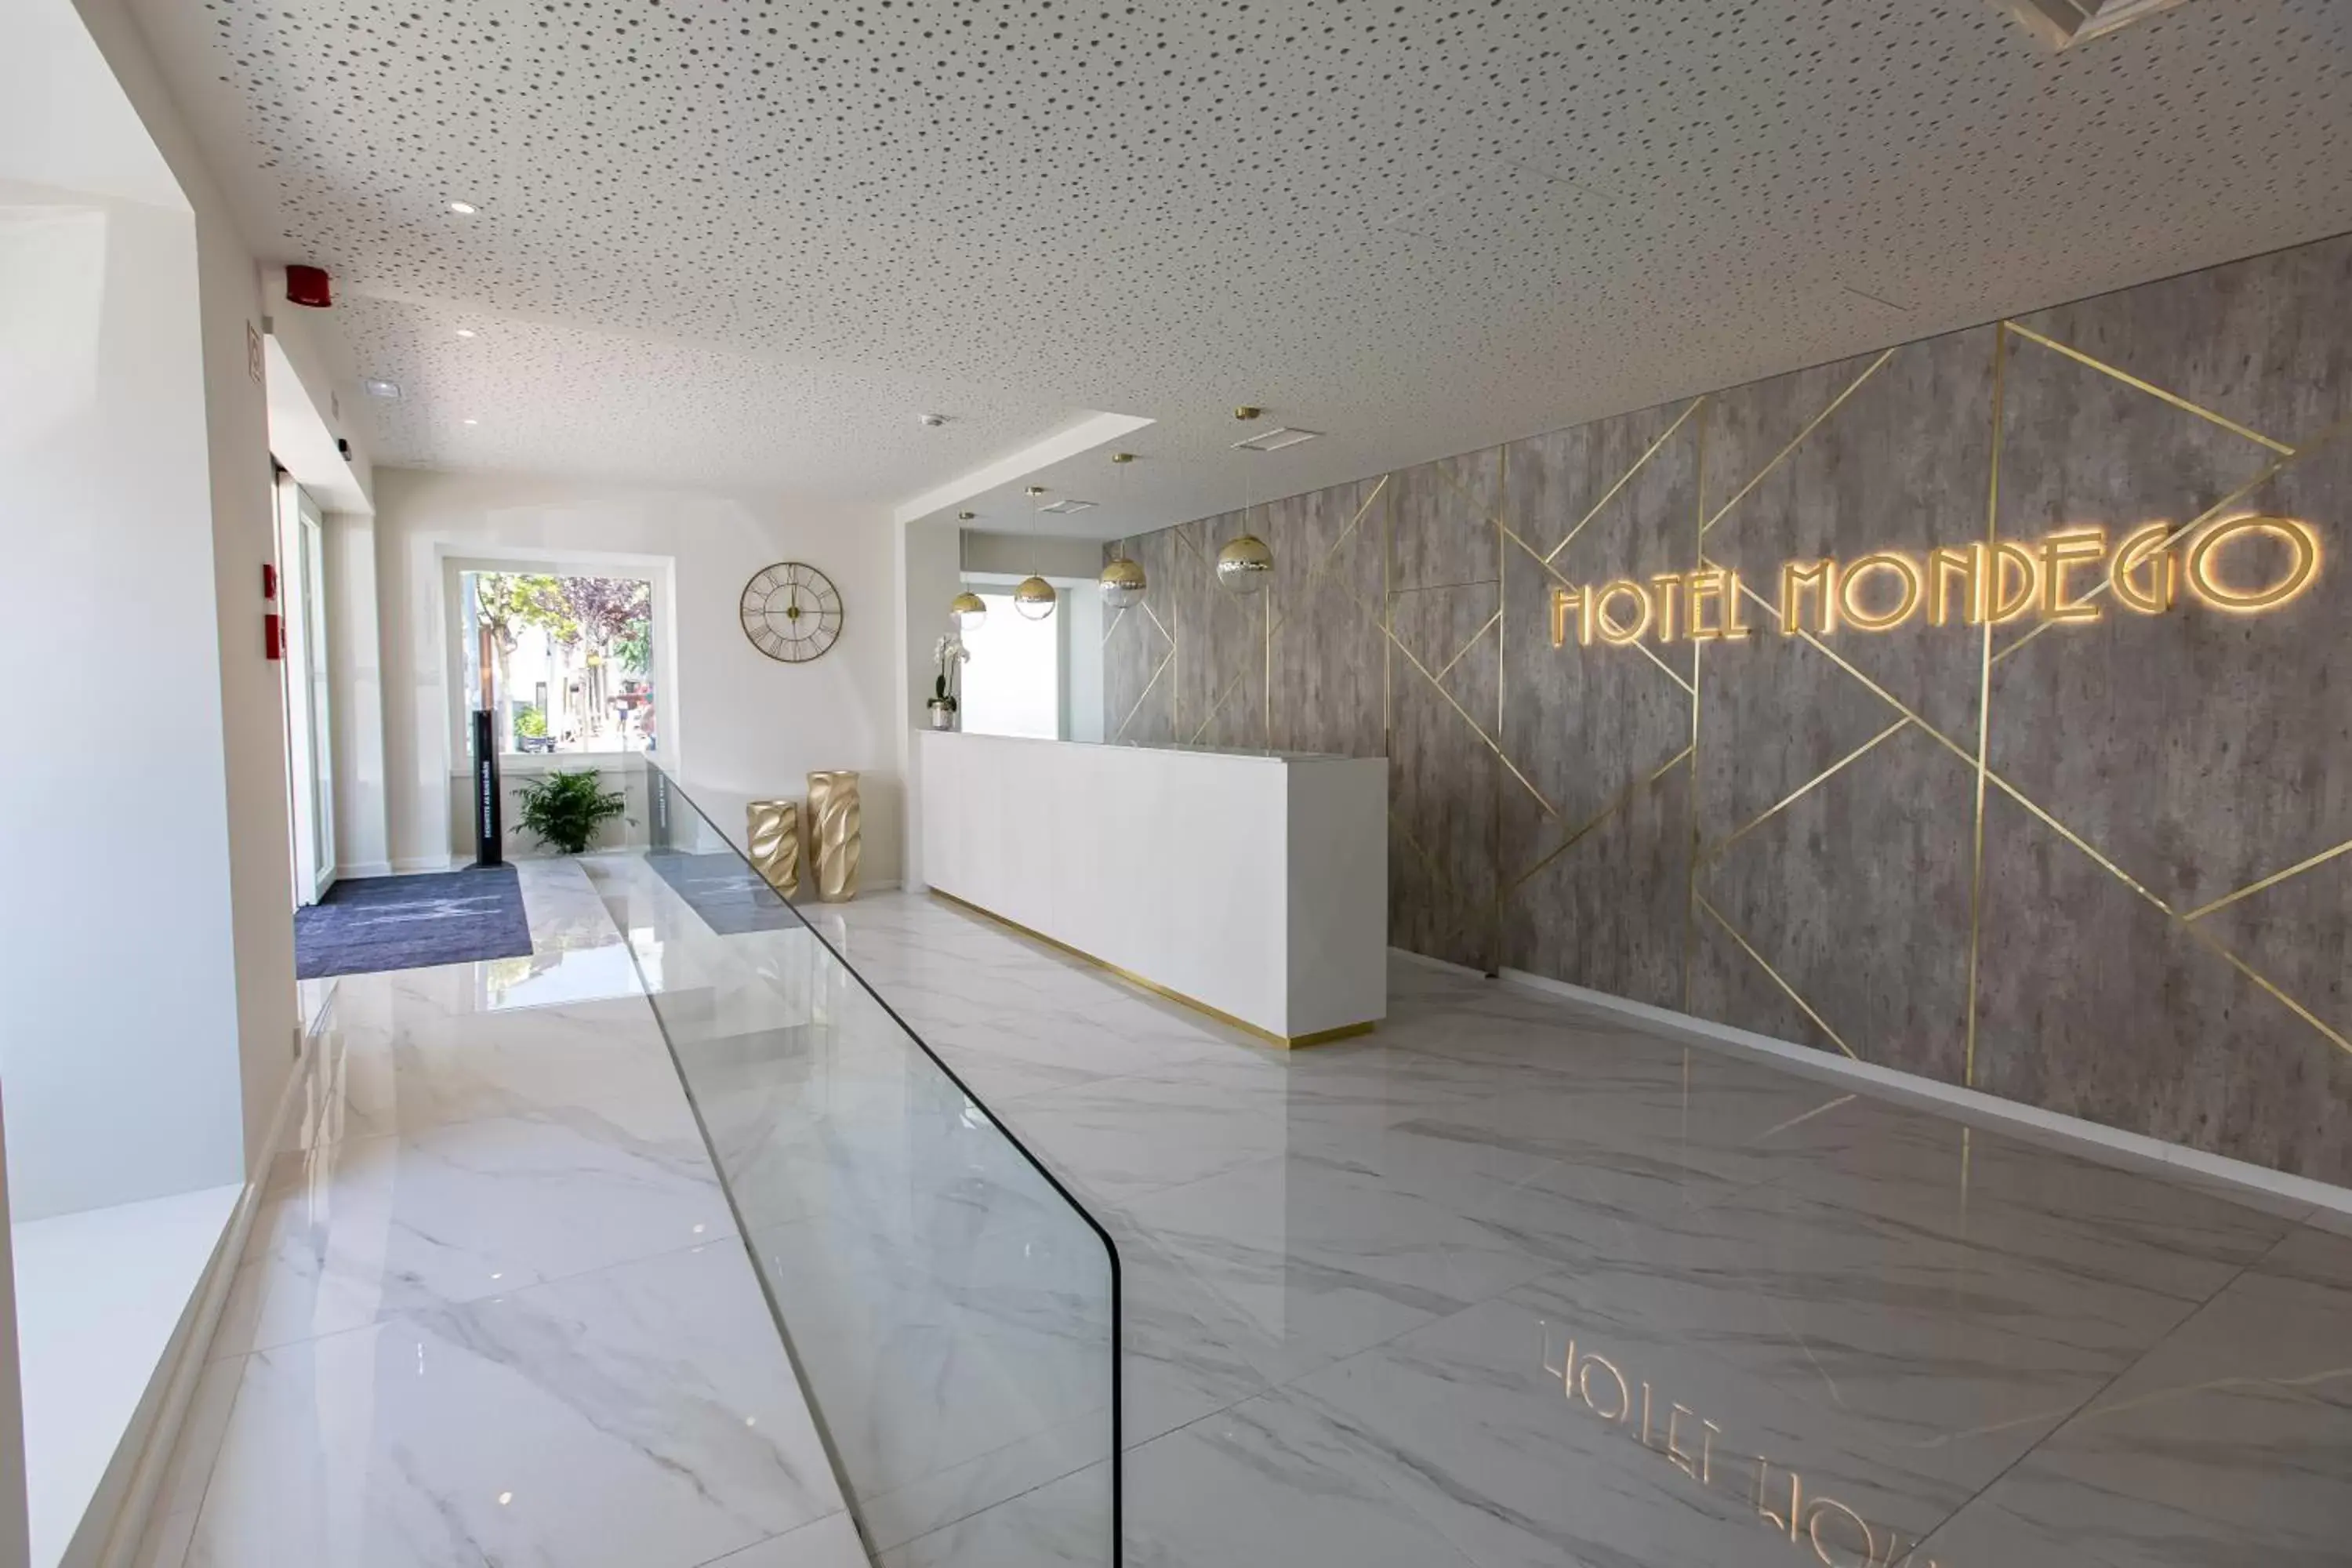 Lobby or reception, Lobby/Reception in Hotel Mondego